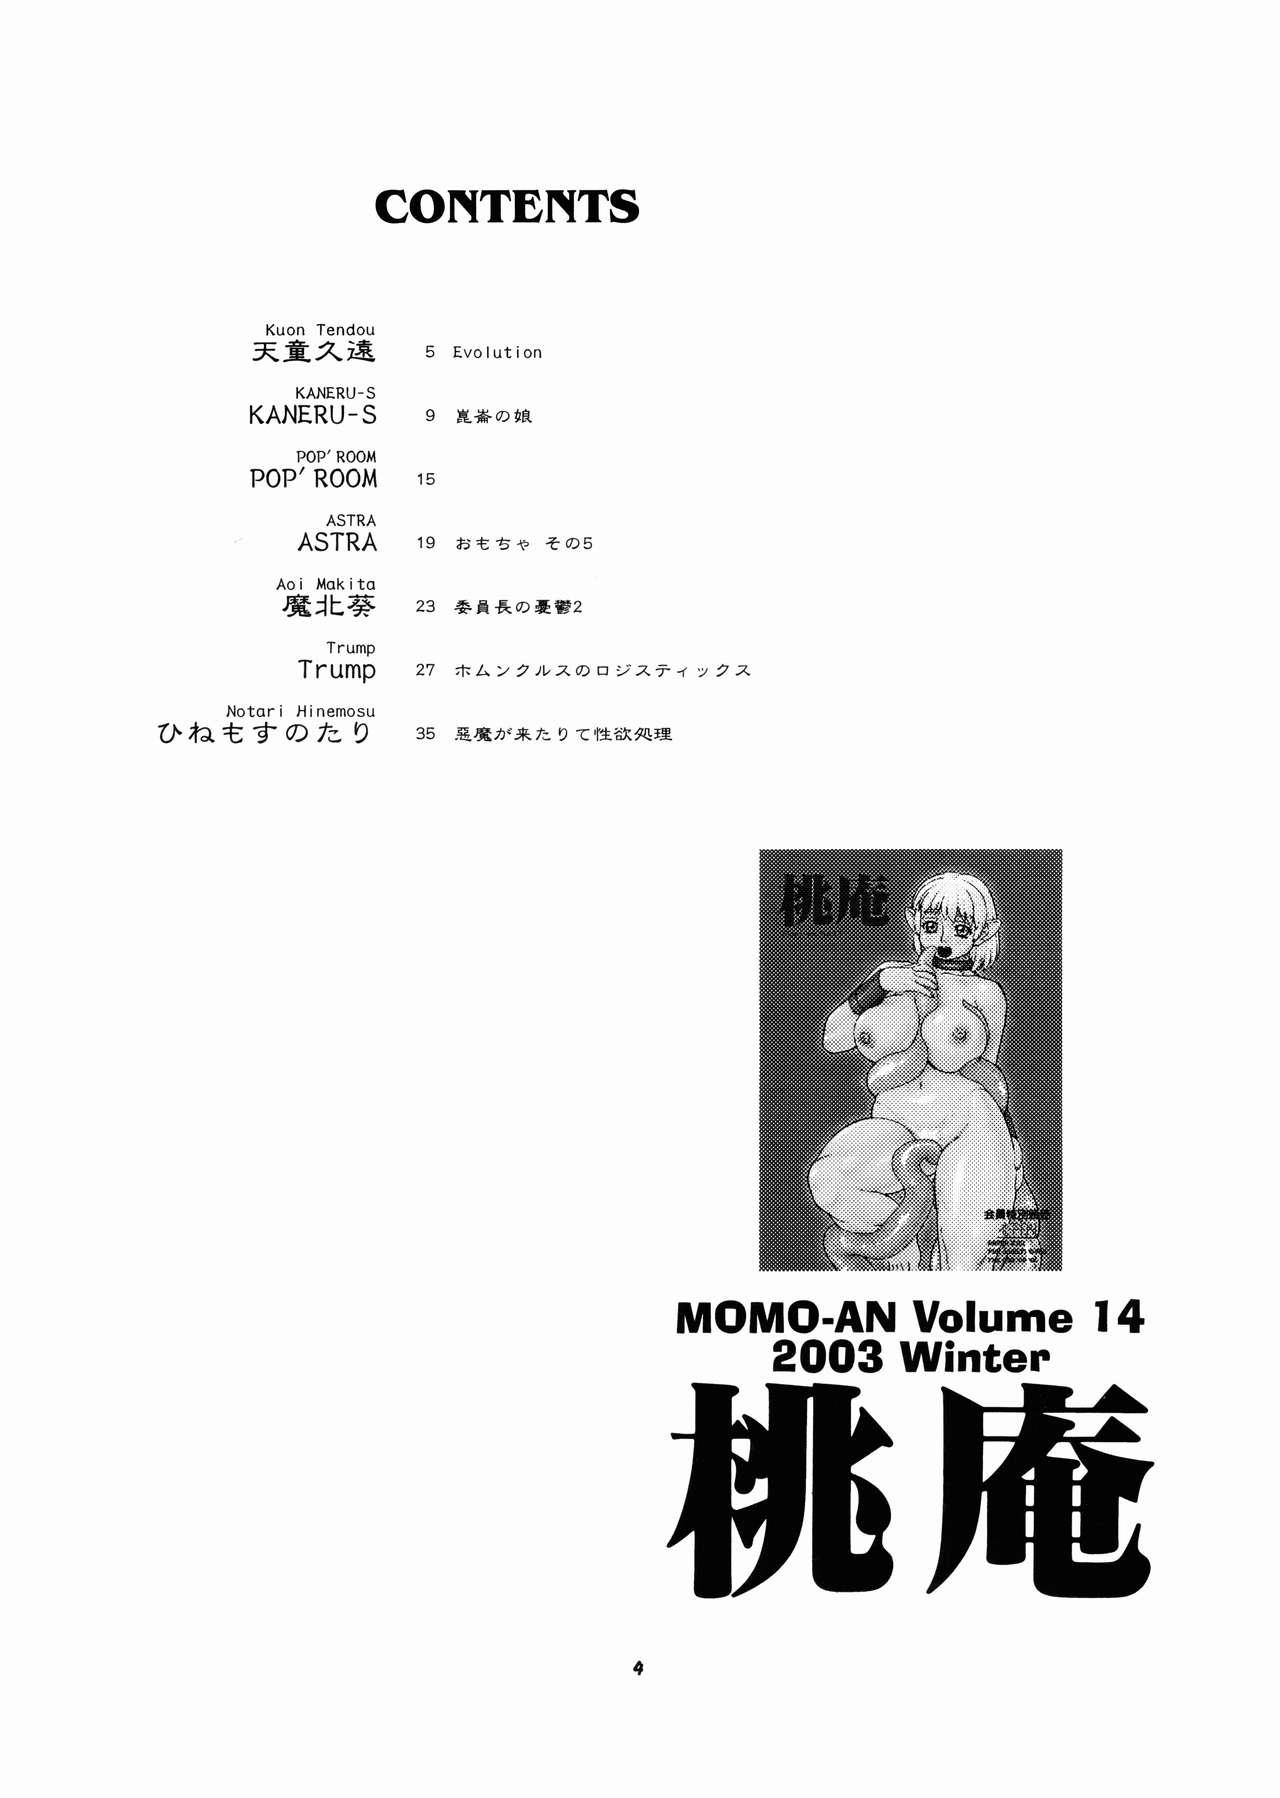 Momo-An Volume 14 3